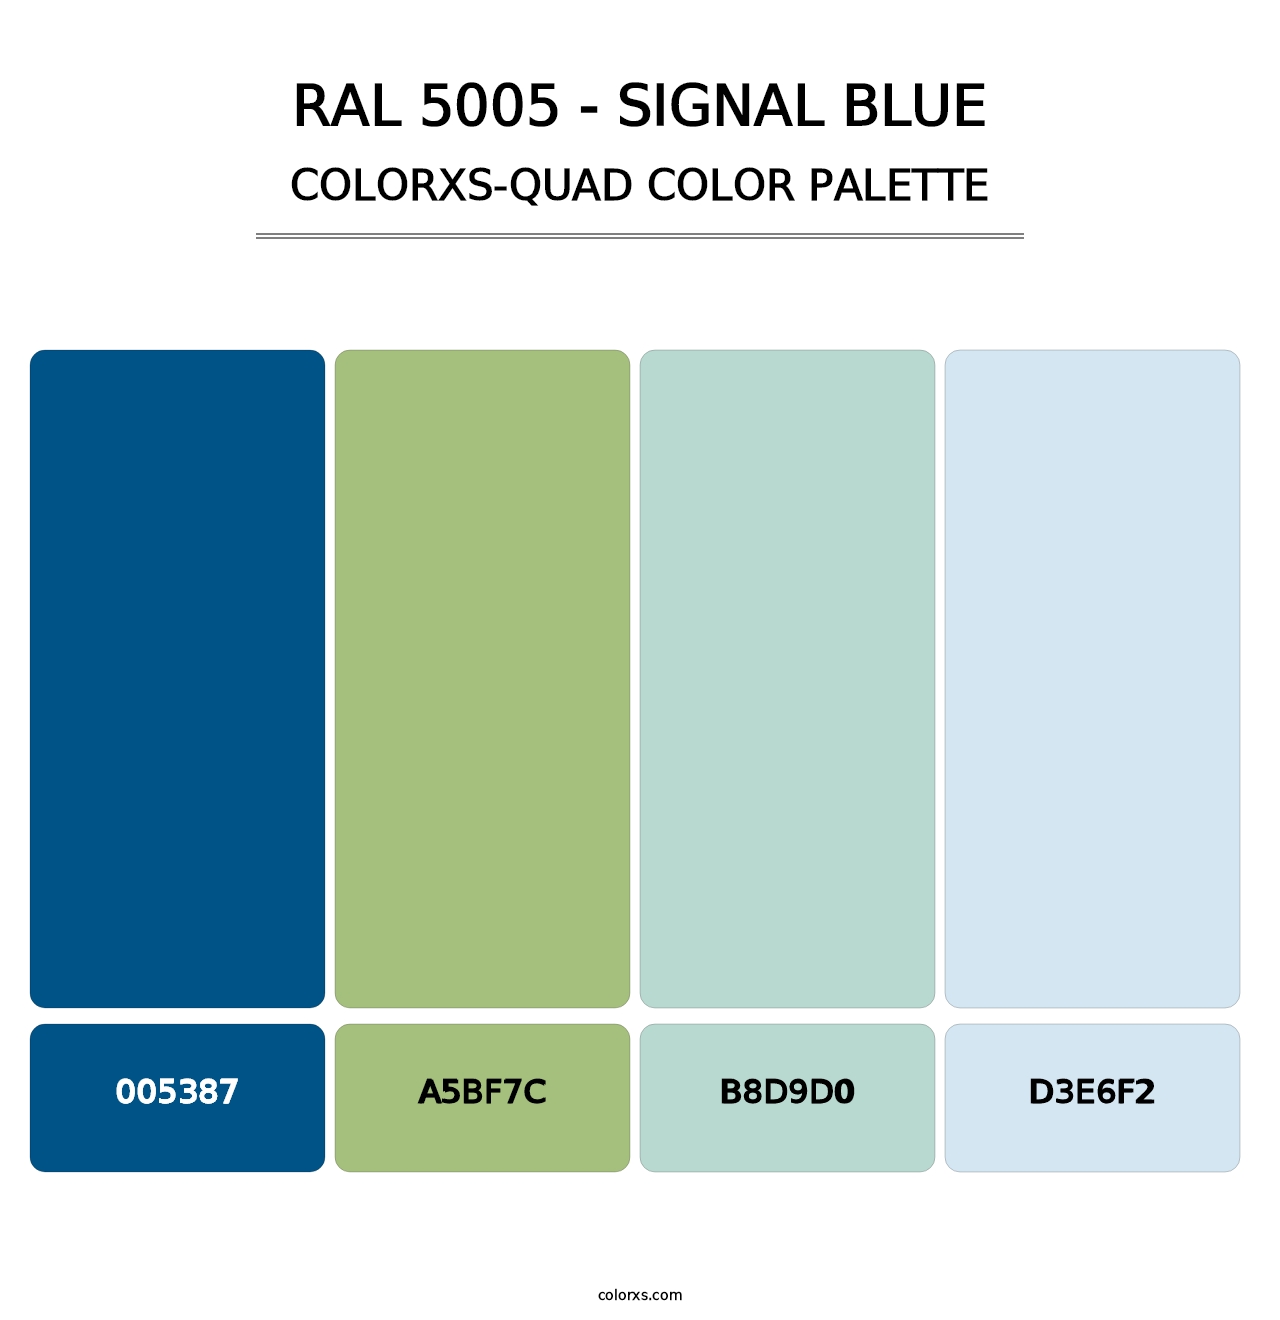 RAL 5005 - Signal Blue - Colorxs Quad Palette